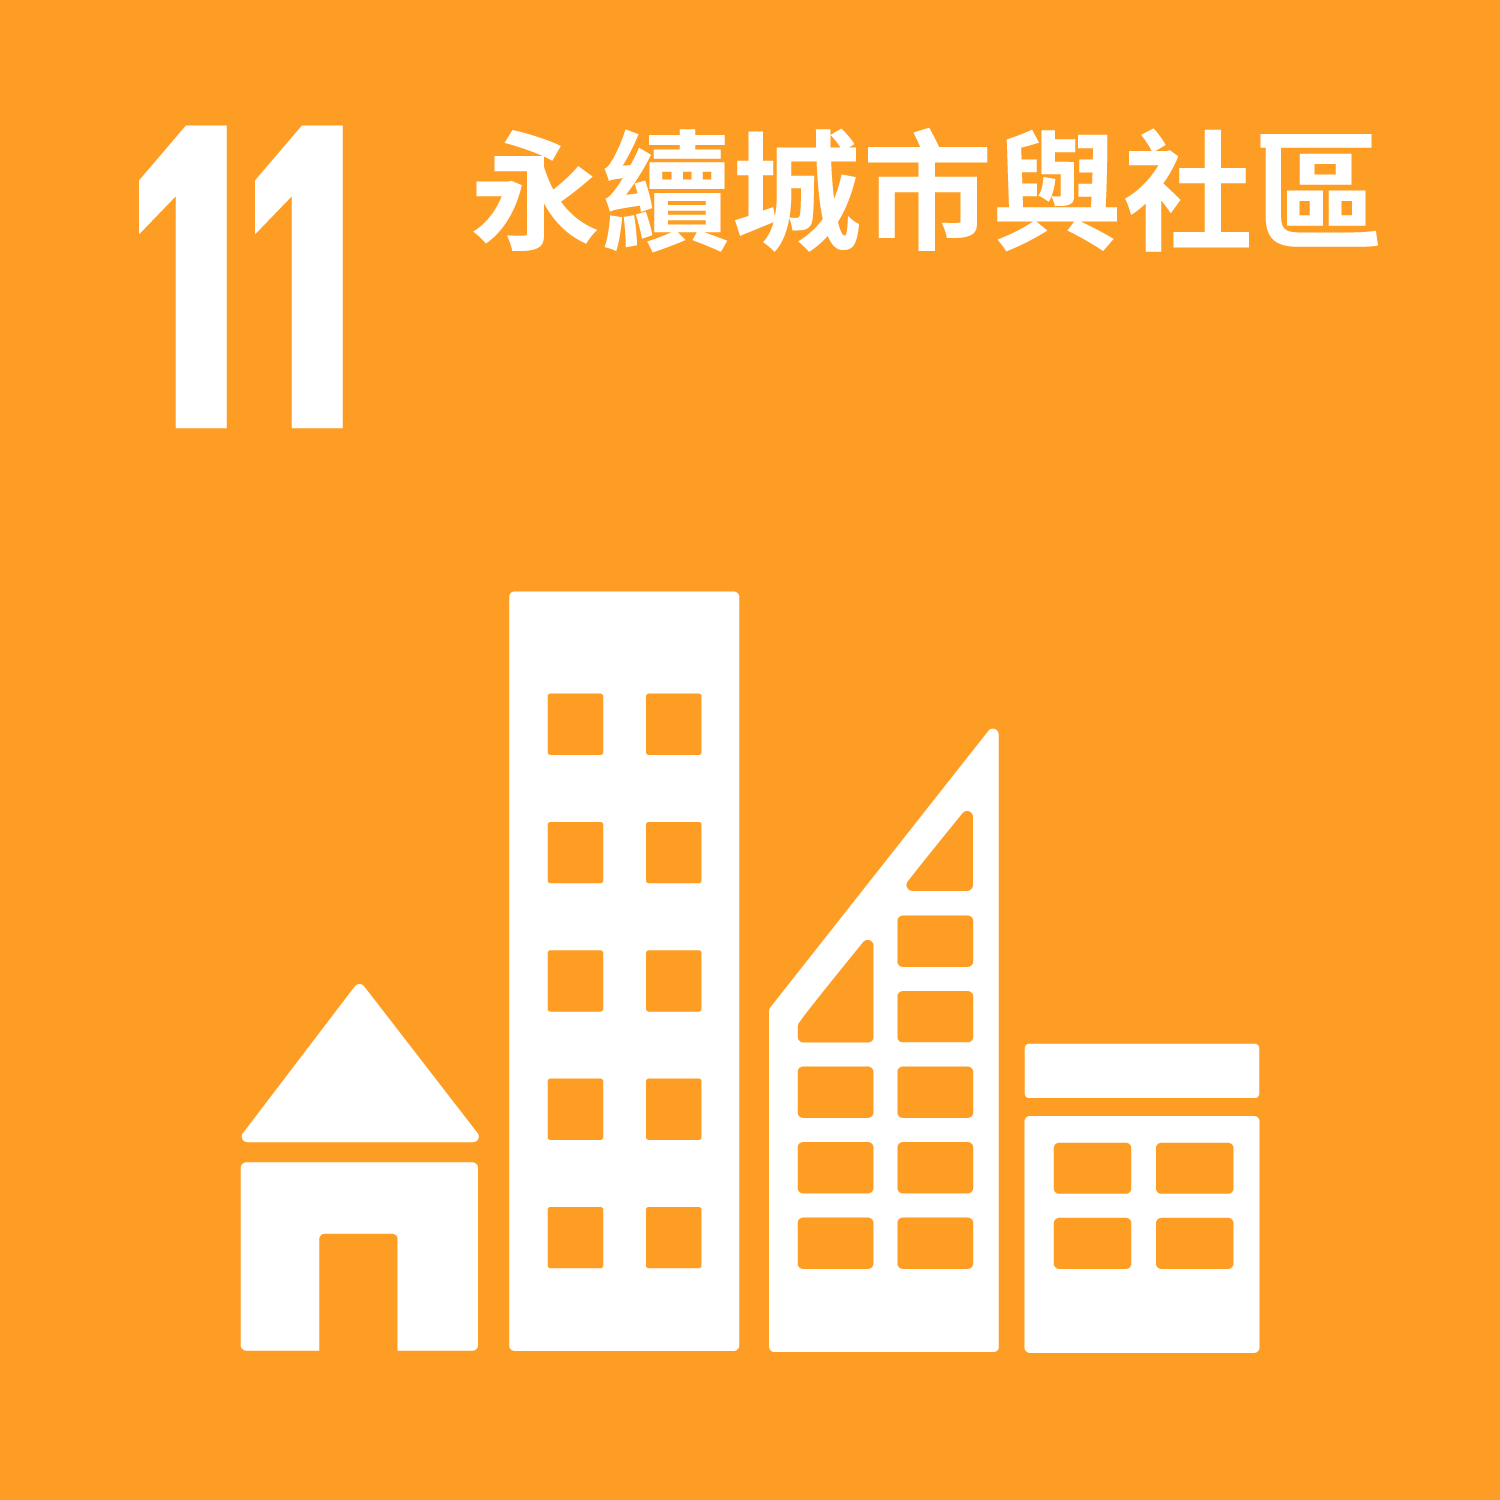 目標11 永續城市與社區